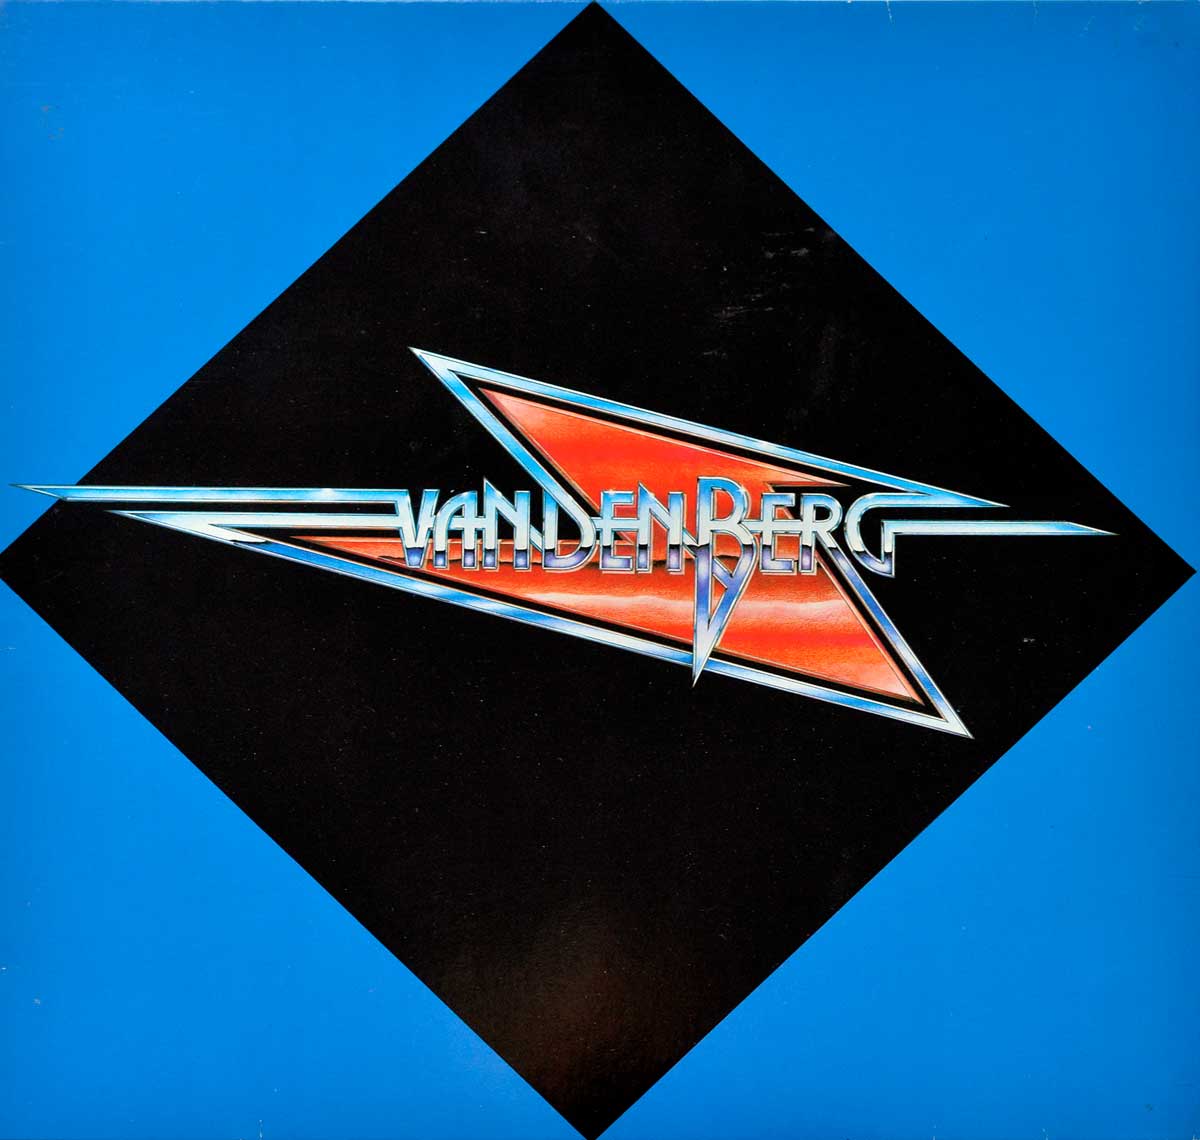 Album Front Cover Photo of VANDENBERG - Vandenberg (self-titled) 